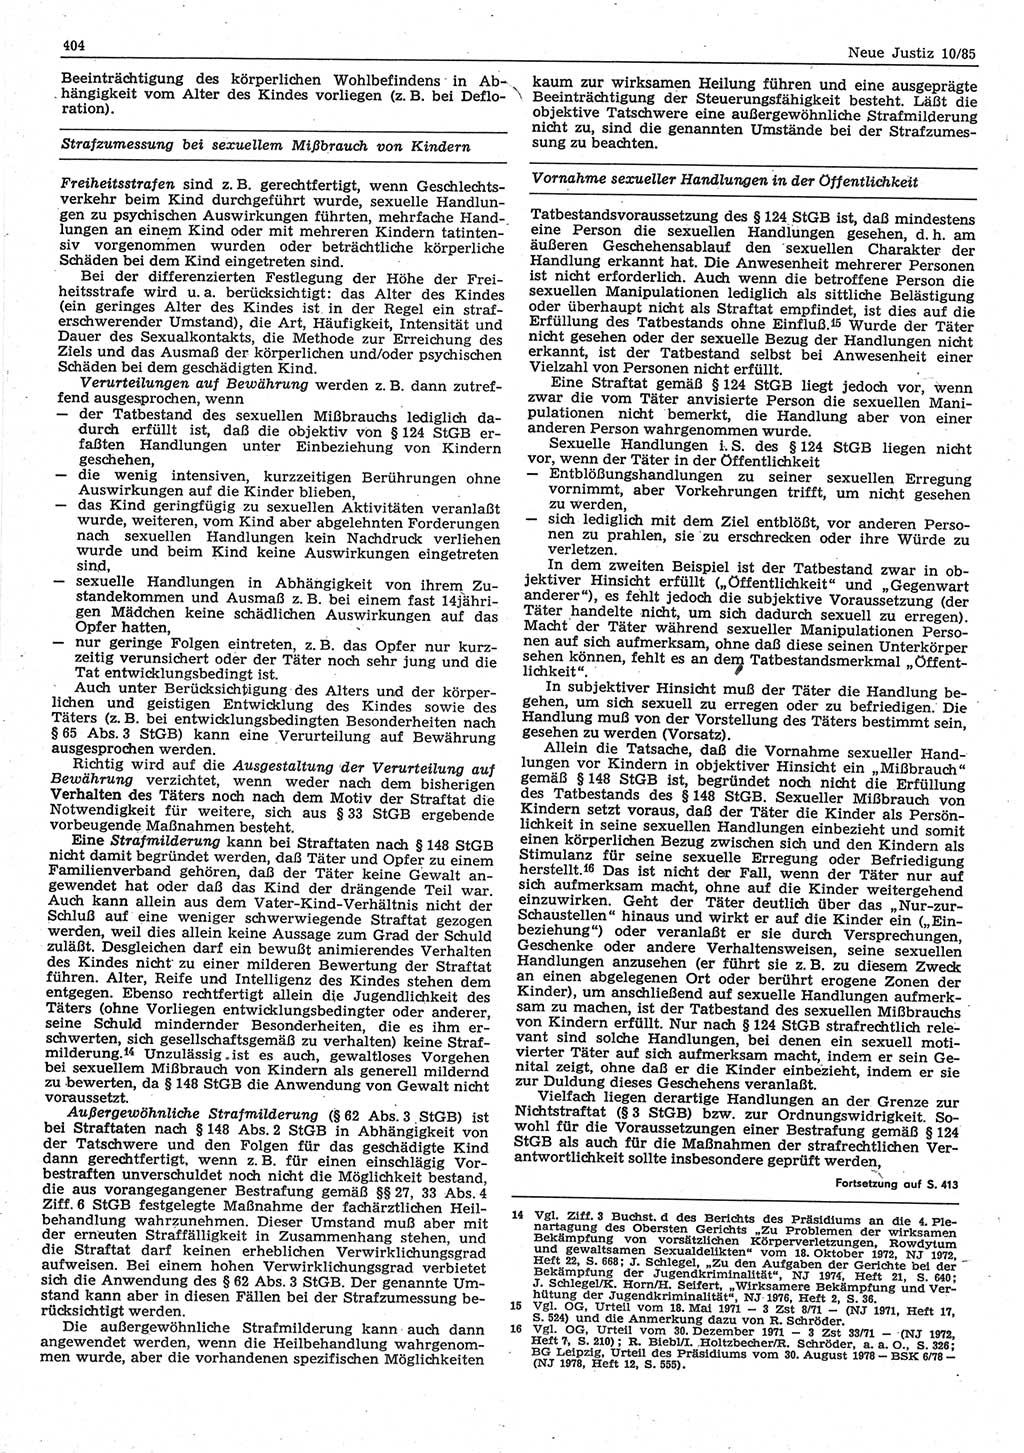 Neue Justiz (NJ), Zeitschrift für sozialistisches Recht und Gesetzlichkeit [Deutsche Demokratische Republik (DDR)], 39. Jahrgang 1985, Seite 404 (NJ DDR 1985, S. 404)